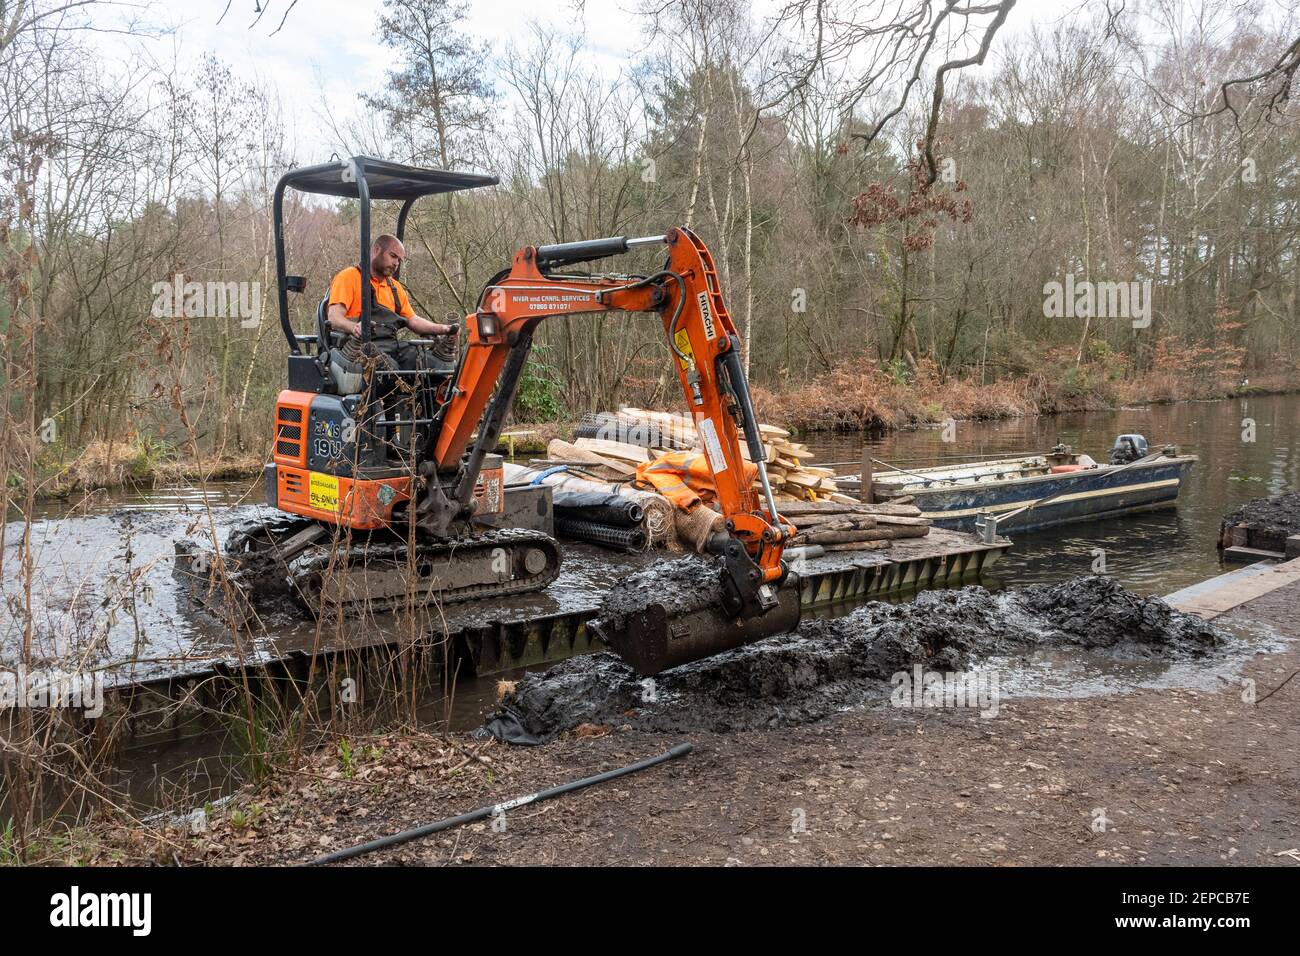 Hombre trabajando en una excavadora o excavadora en un pontón de trabajo flotante reparando un banco de canales erosionado en el Canal Basingstoke en Surrey, Reino Unido Foto de stock